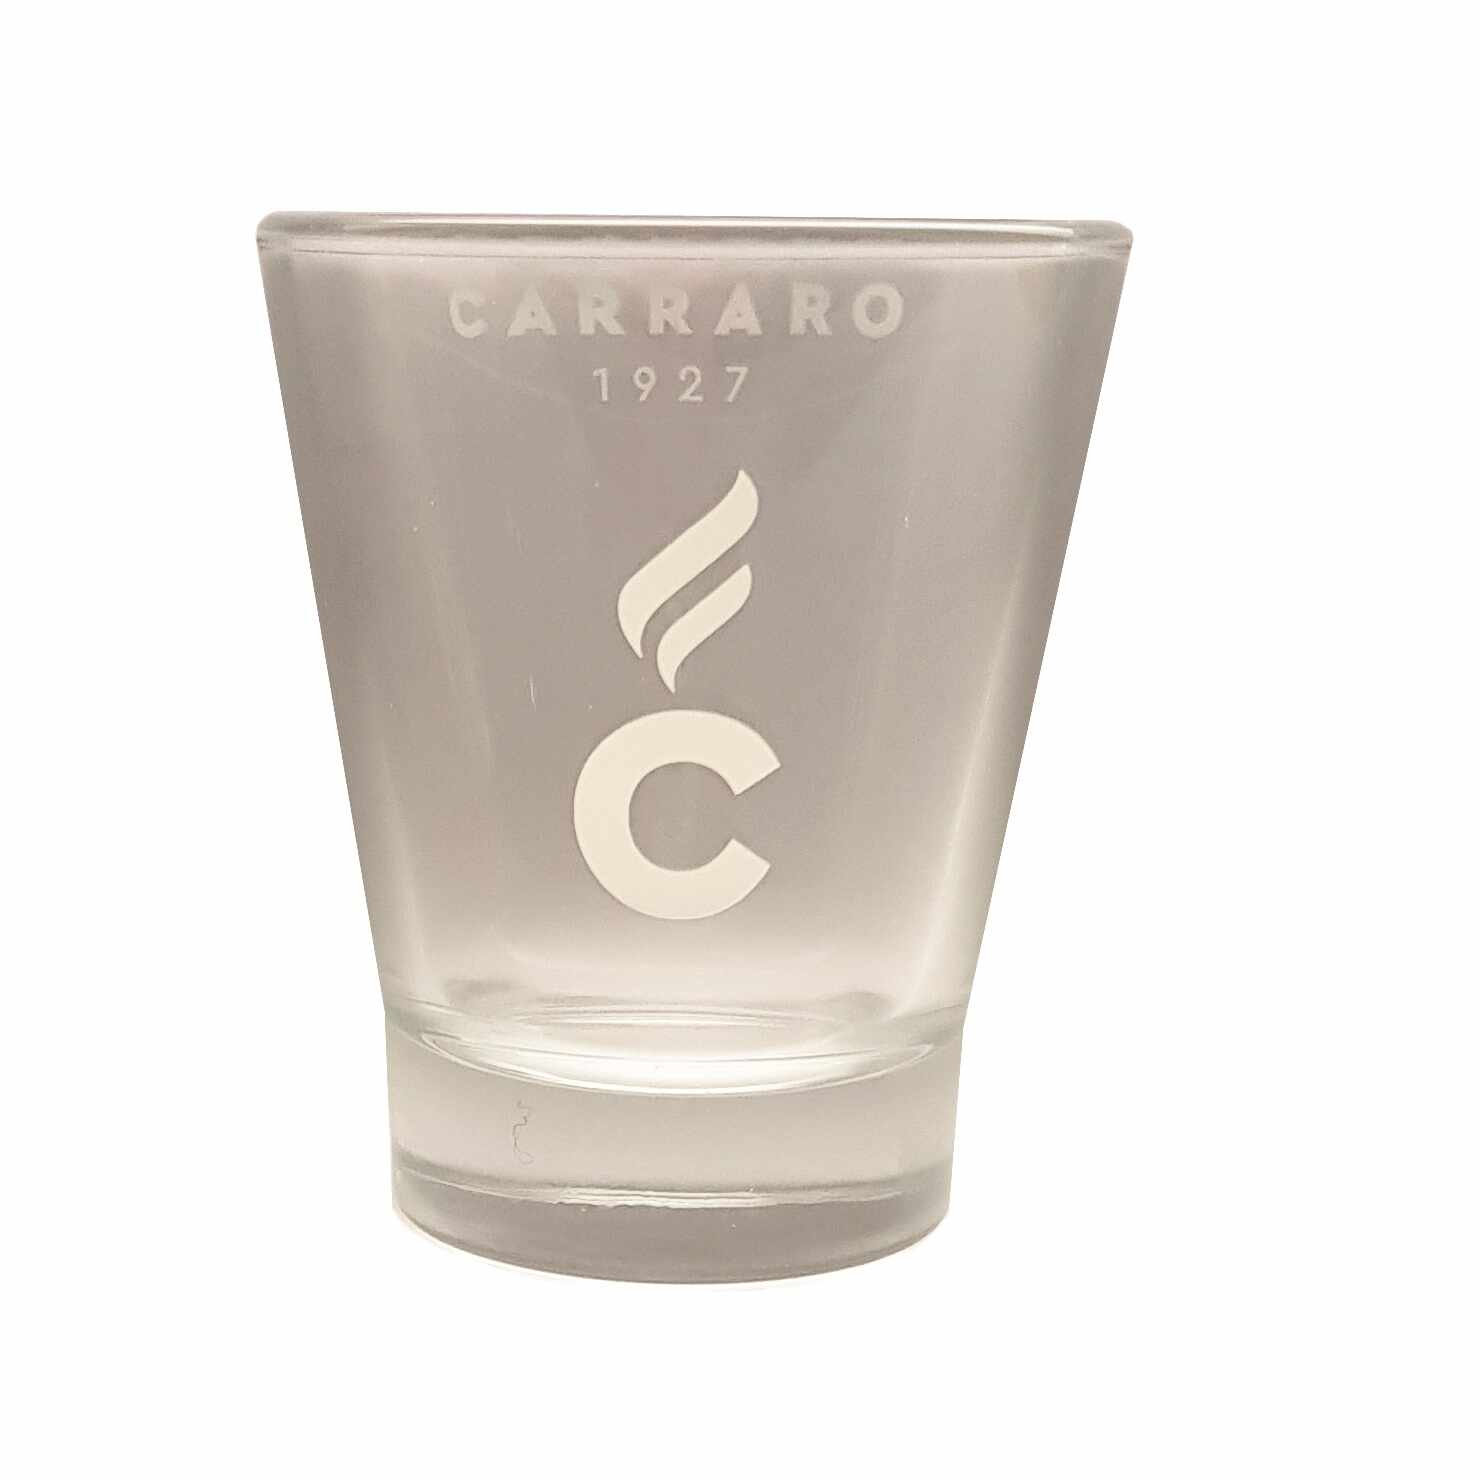 Carraro pahare sticla pentru espresso 60ml set 6 buc